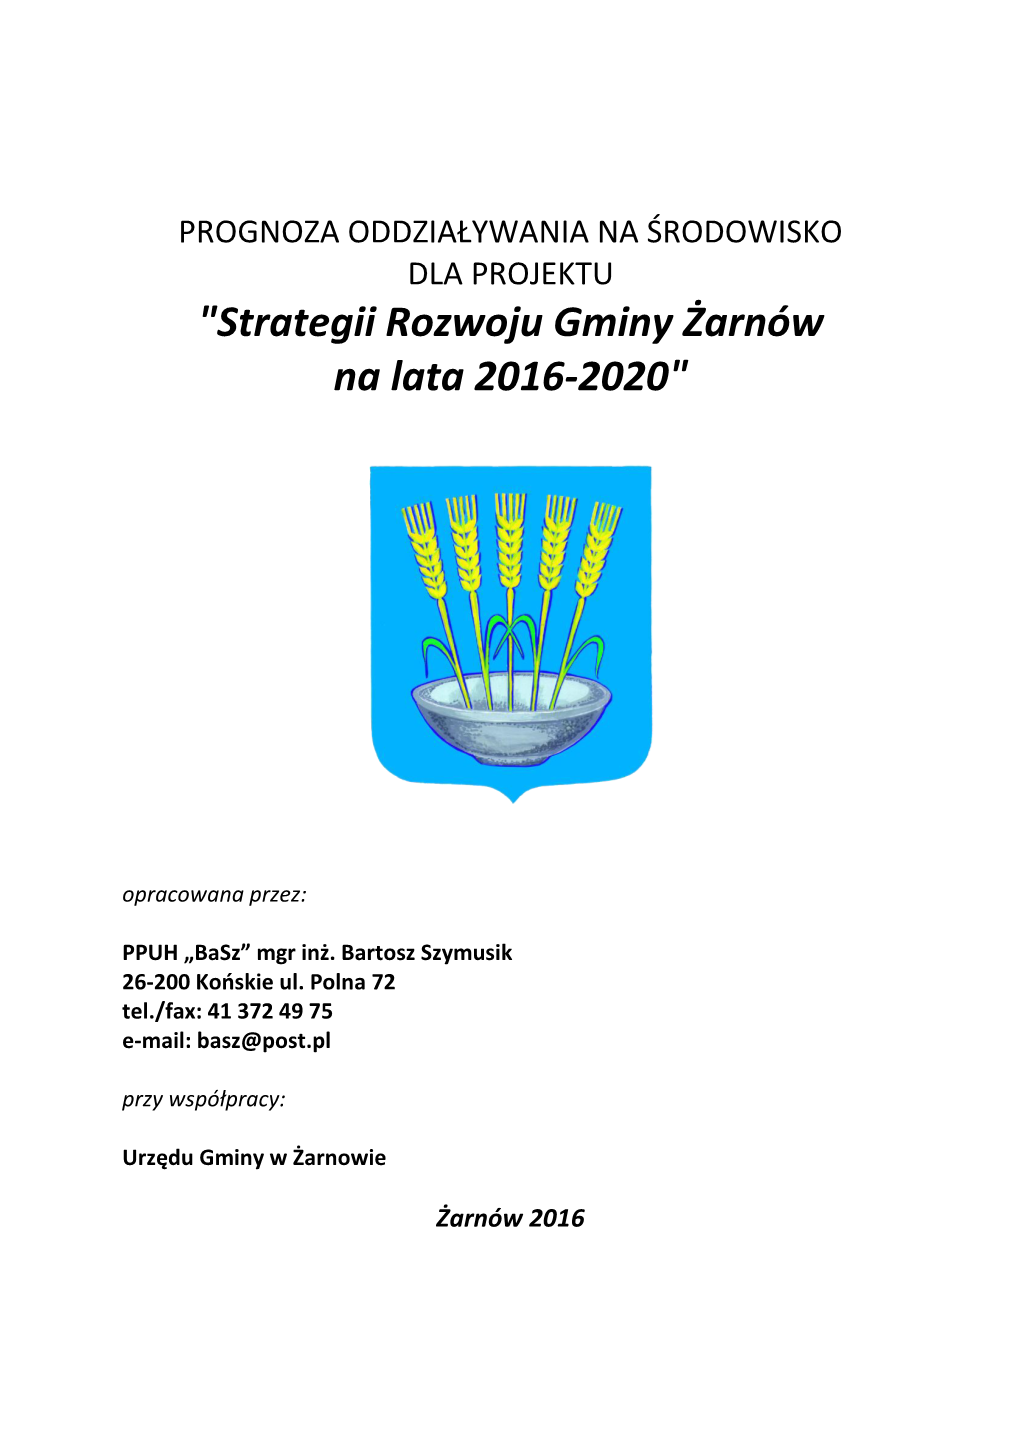 "Strategii Rozwoju Gminy Żarnów Na Lata 2016-2020"